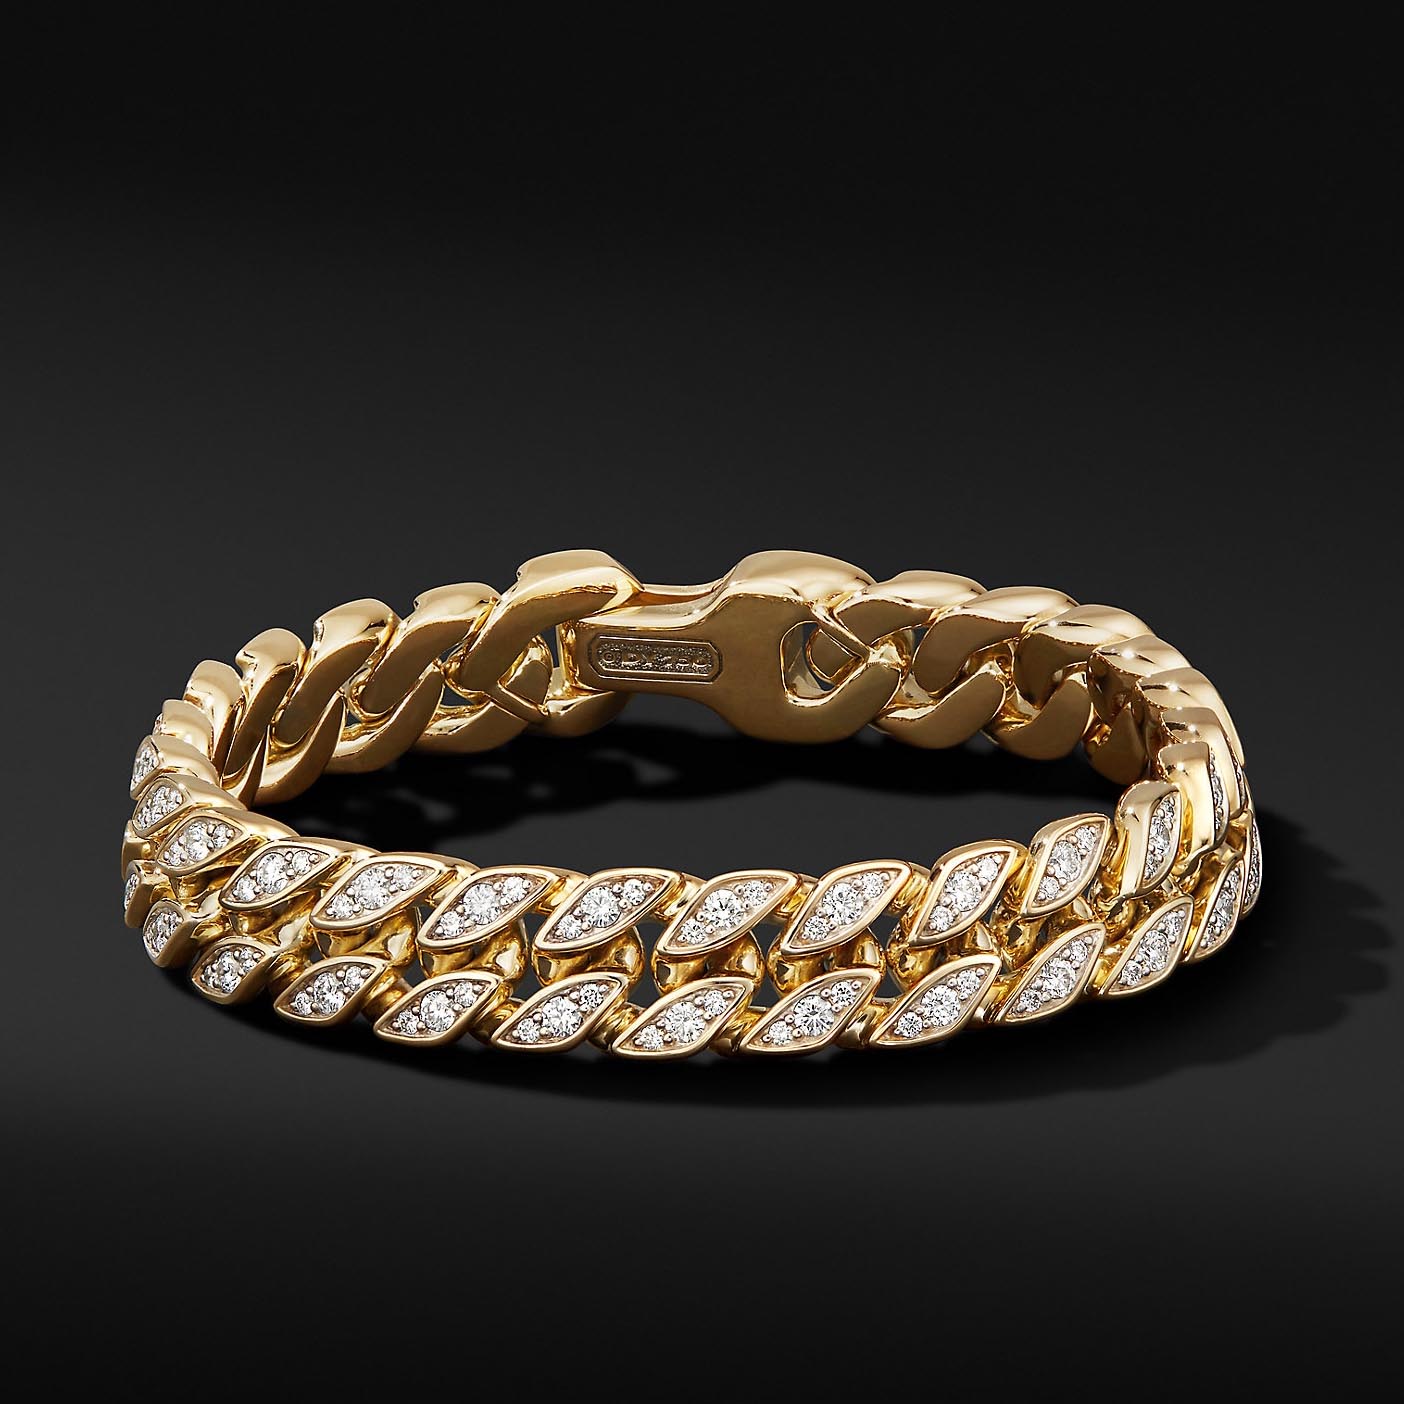 Grosir gelang Emas Kuning 18 karat OEM pada perak membuat perhiasan bentuk ukiran perhiasan OEM/ODM khusus